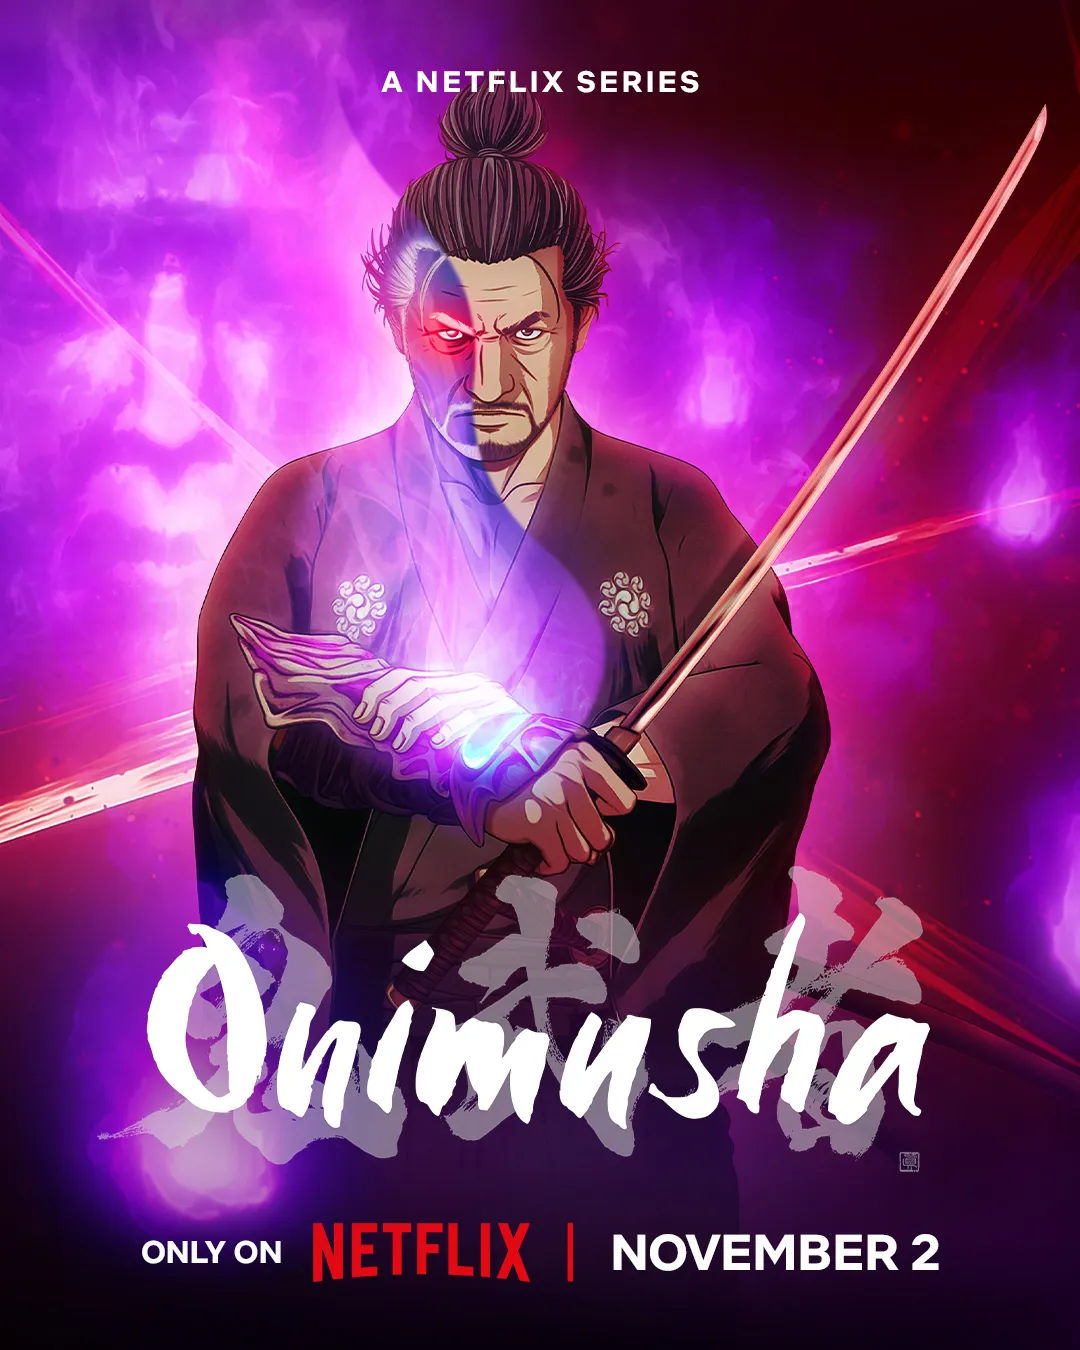 Onimusha, l’anime di Netflix basato sul videogioco di Capcom